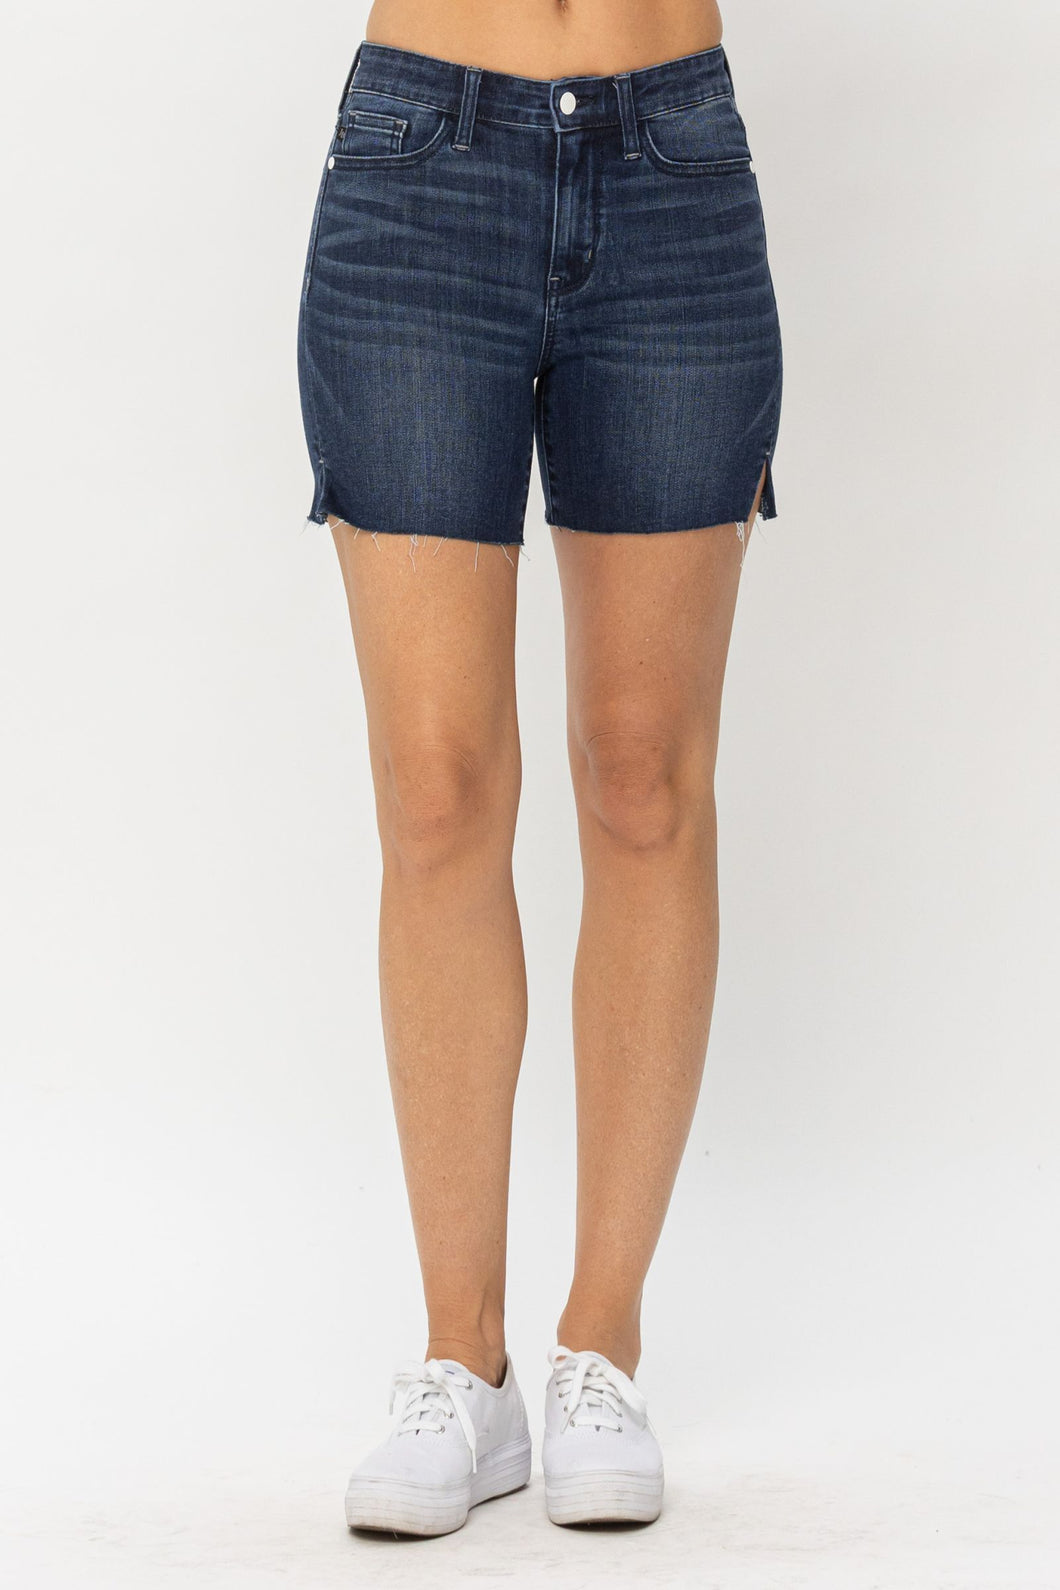 JUDY BLUE Dark Wash Mid Length Cut Off Shorts